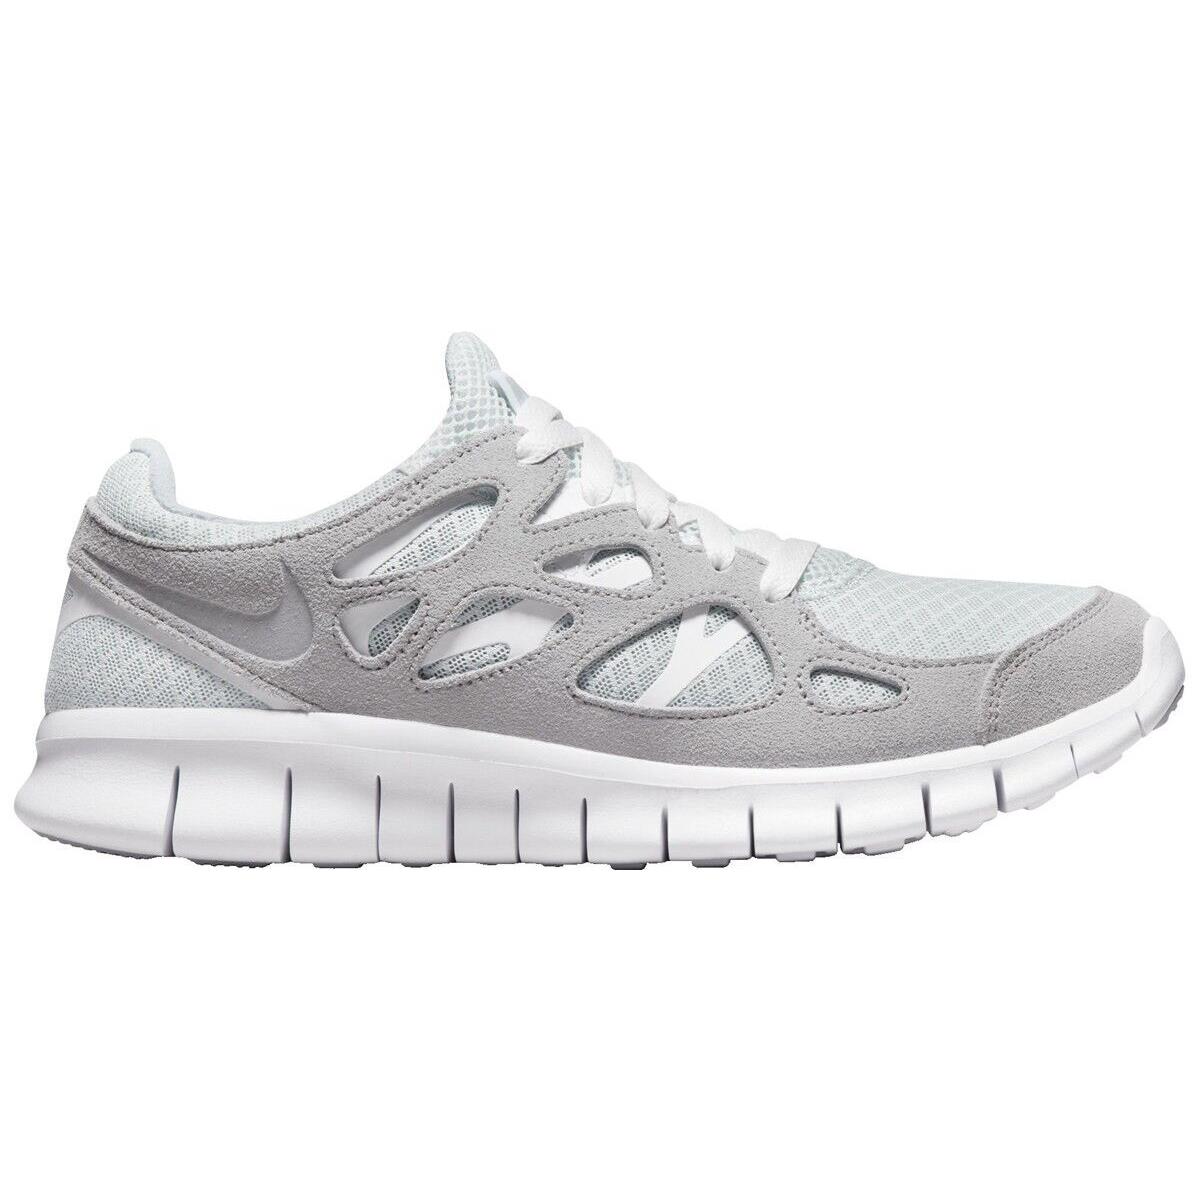 Nike Women`s Free Run 2 Shoes Size US 9.5 M White / Summit White - White